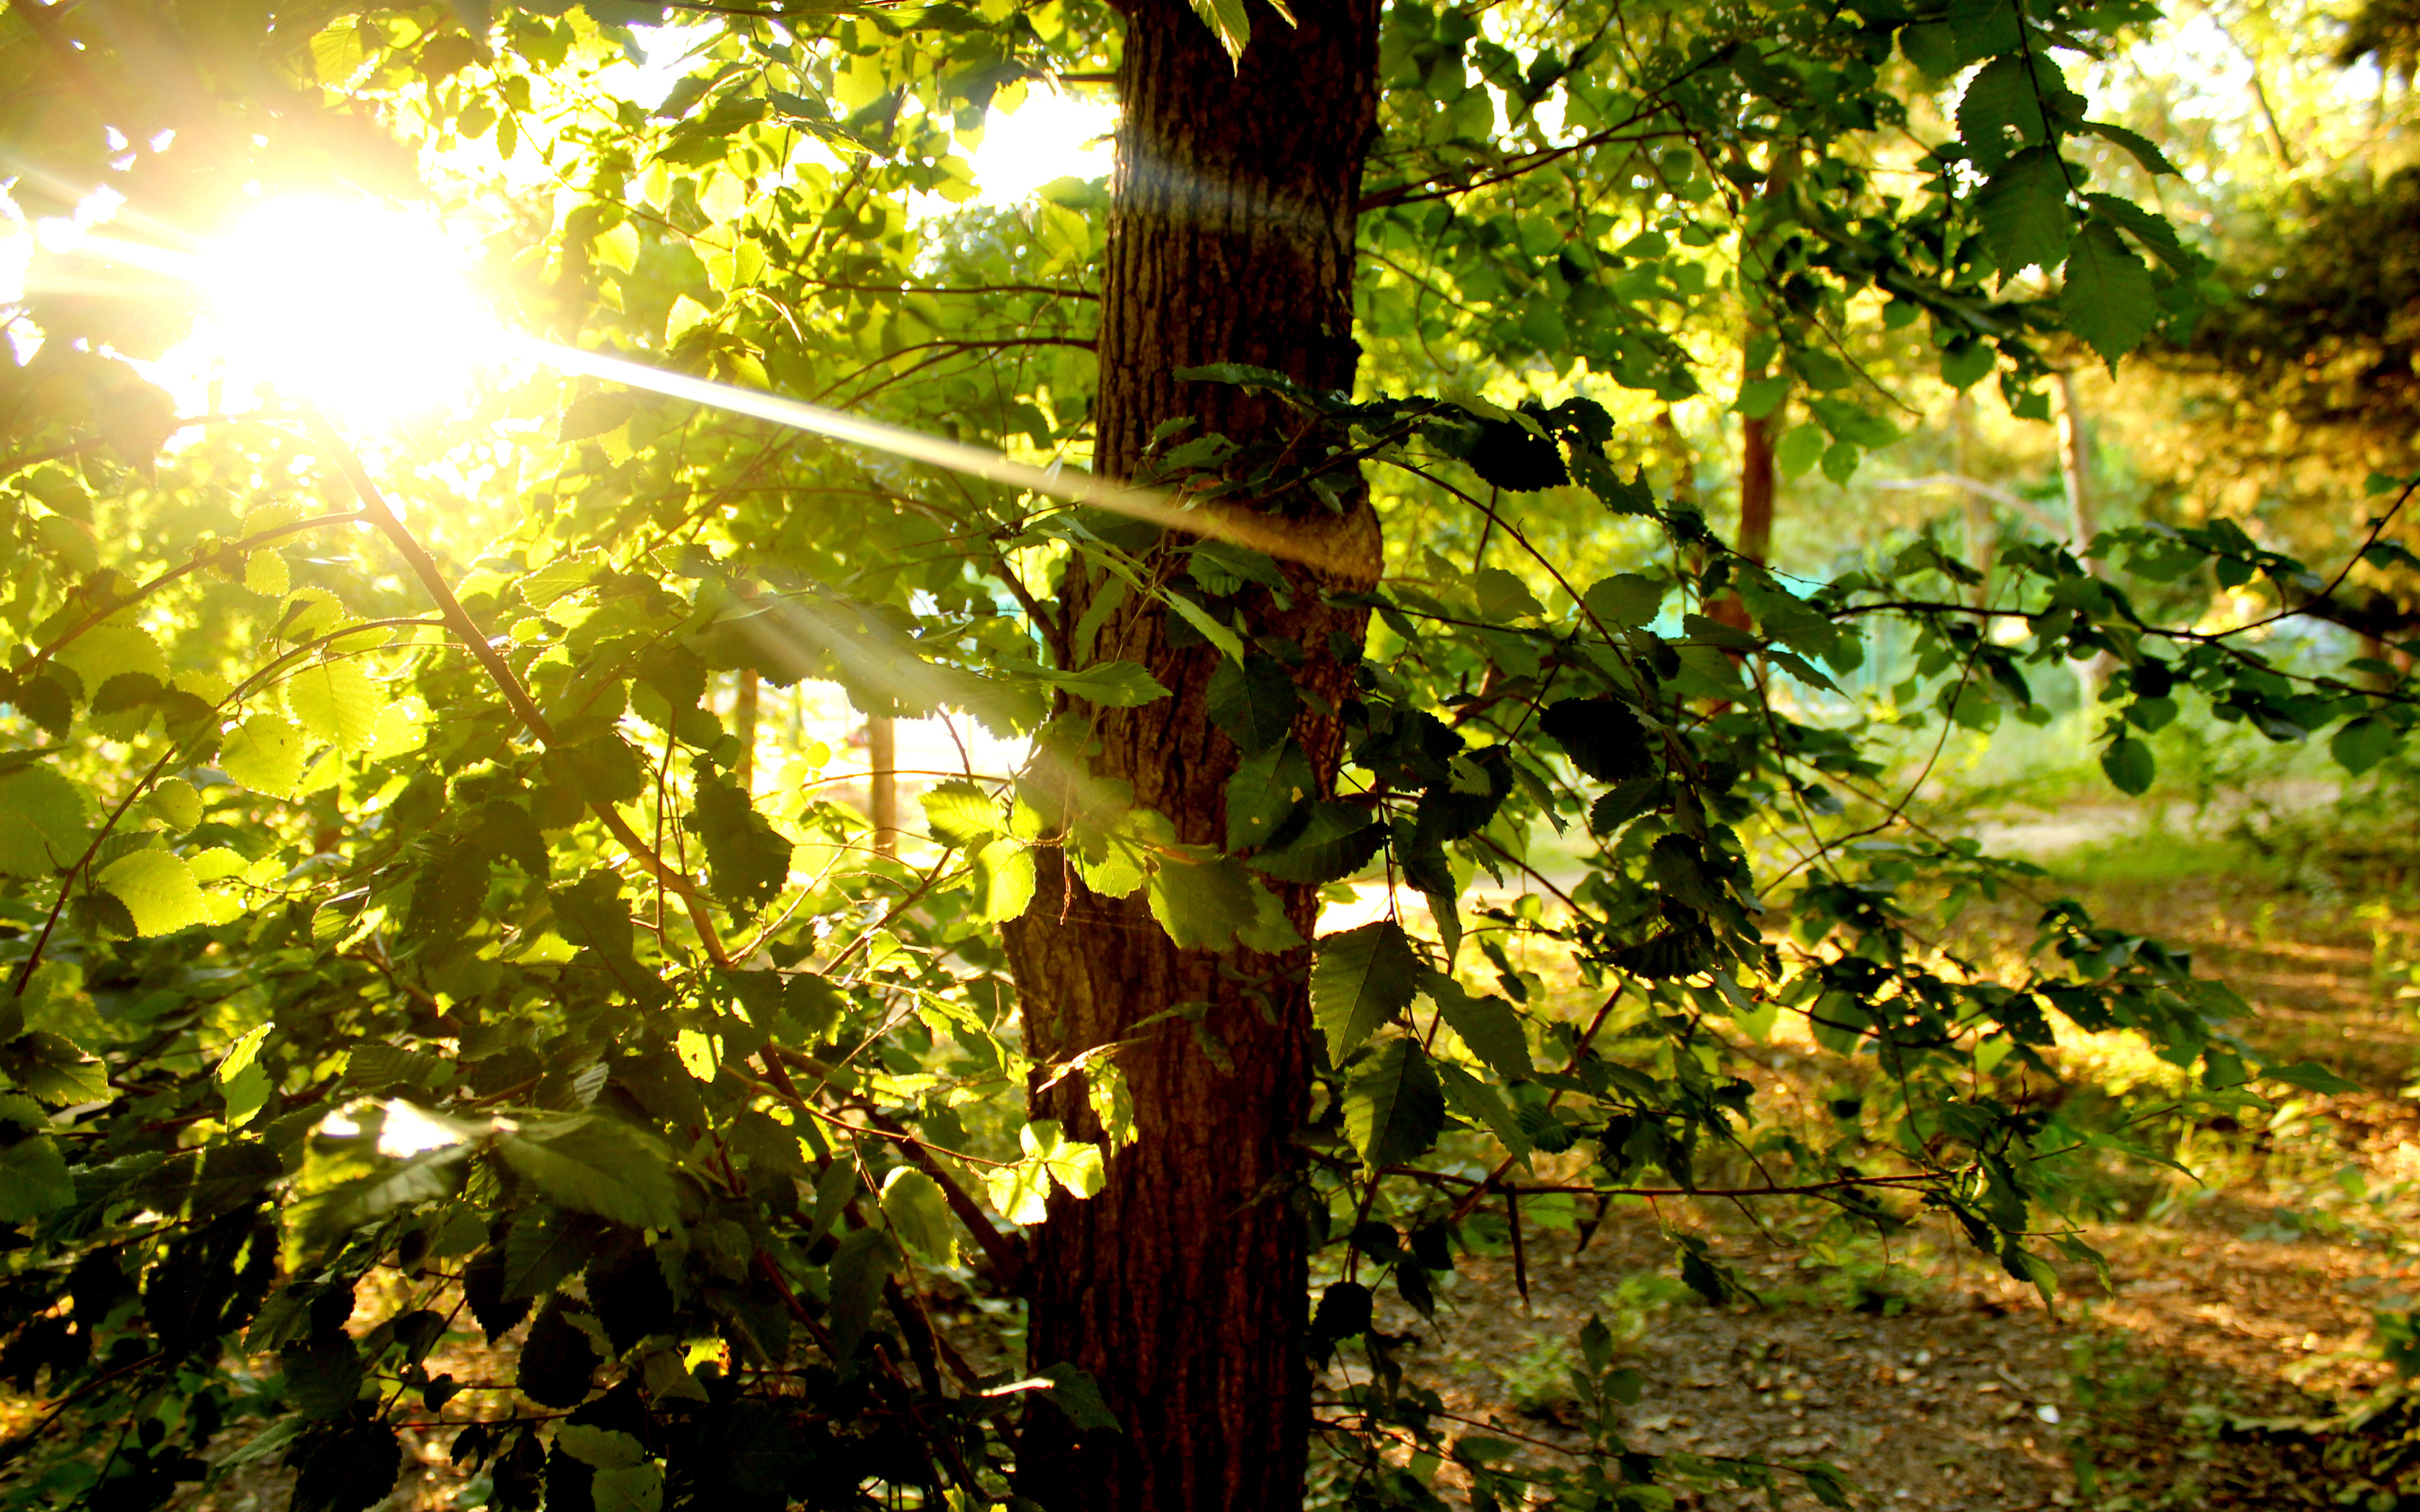 Луч света новый свет. Солнце сквозь листву. Свет сквозь листву. Дерево в лучах солнца. Солнце сквозь листву деревьев.